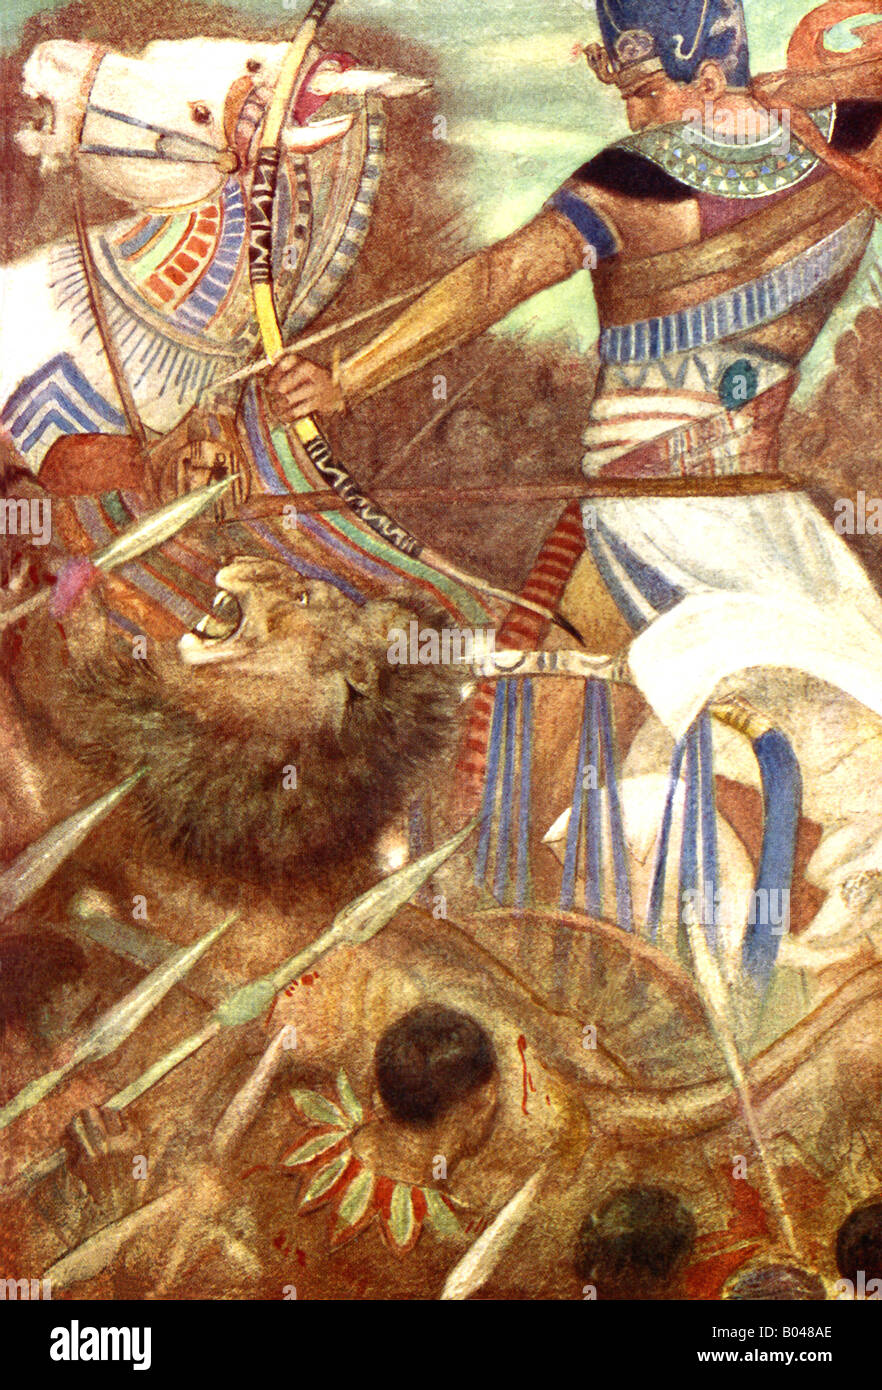 Ramsès le Grand, ou Ramsès II (également orthographié Ramsès), a été l'une des plus puissants seigneurs, montré ici dans la bataille. Banque D'Images